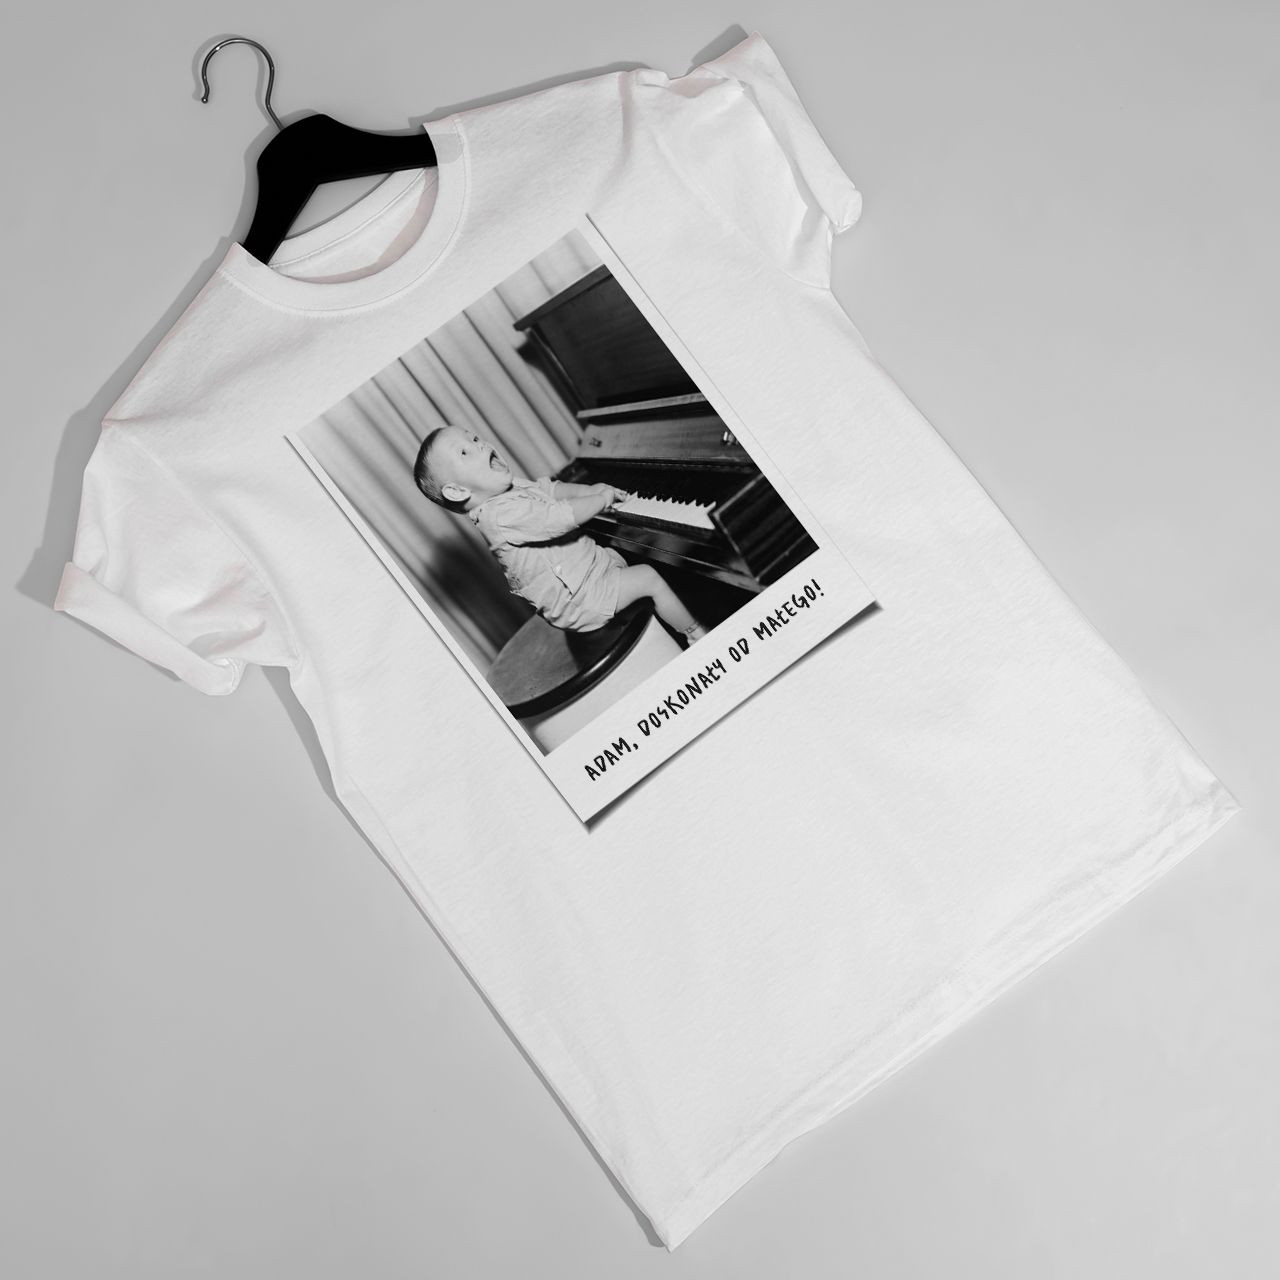 Męska koszulka ze zdjęciem DUŻA FOTKA t-shirt urodzinowy - M